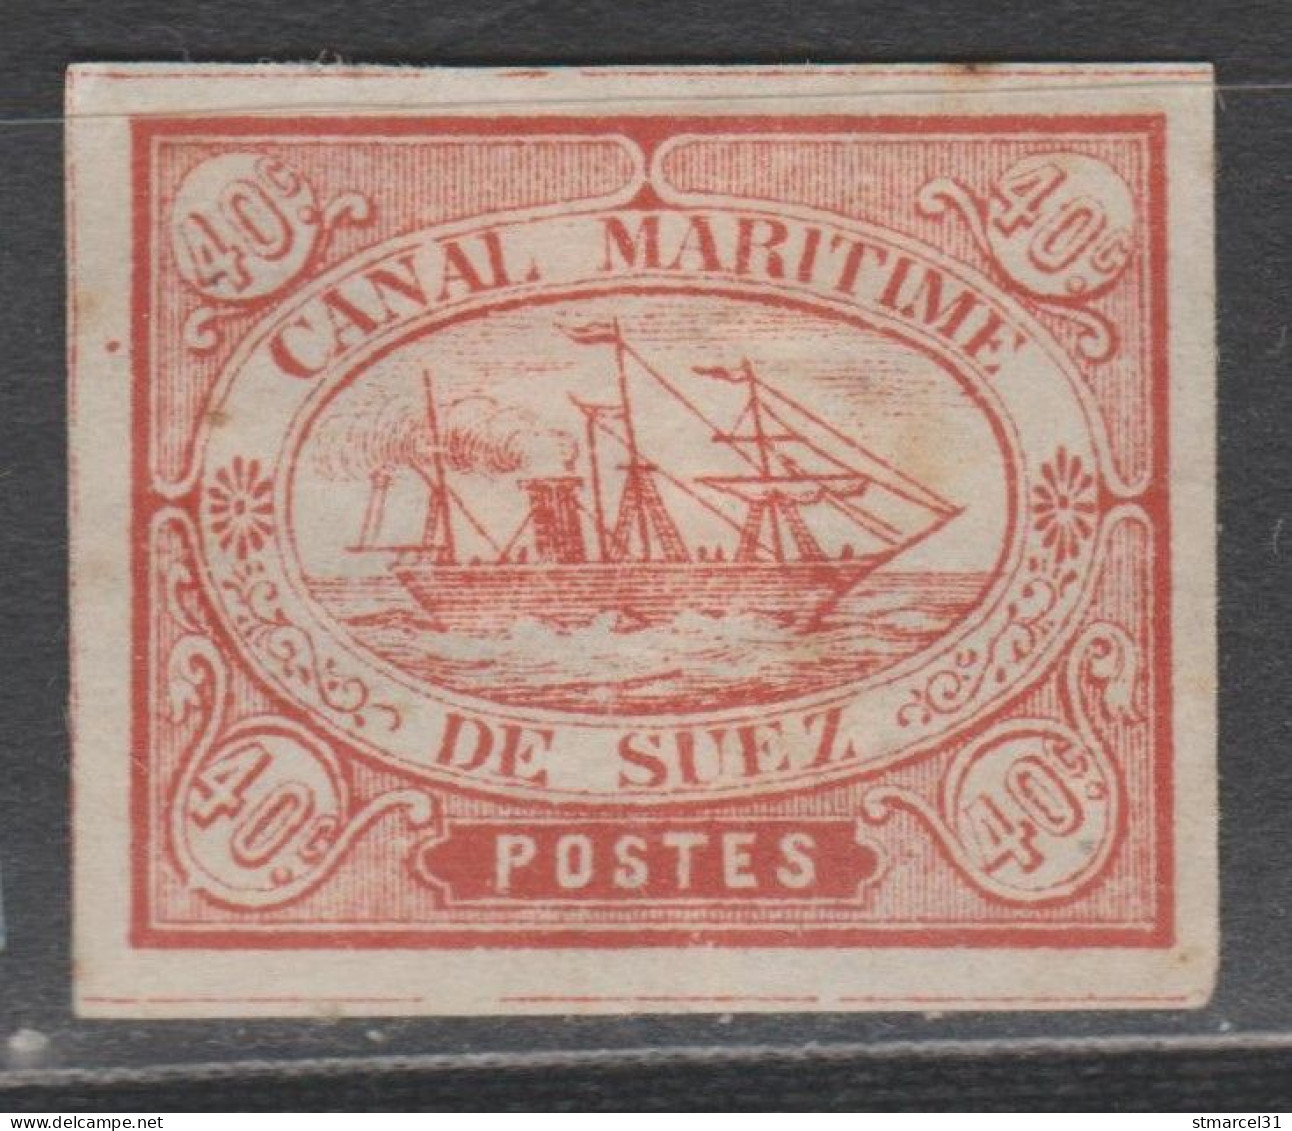 CANAL MARITIME De SUEZ 40c Neuf Semblant Gommé - 1866-1914 Khedivate Of Egypt